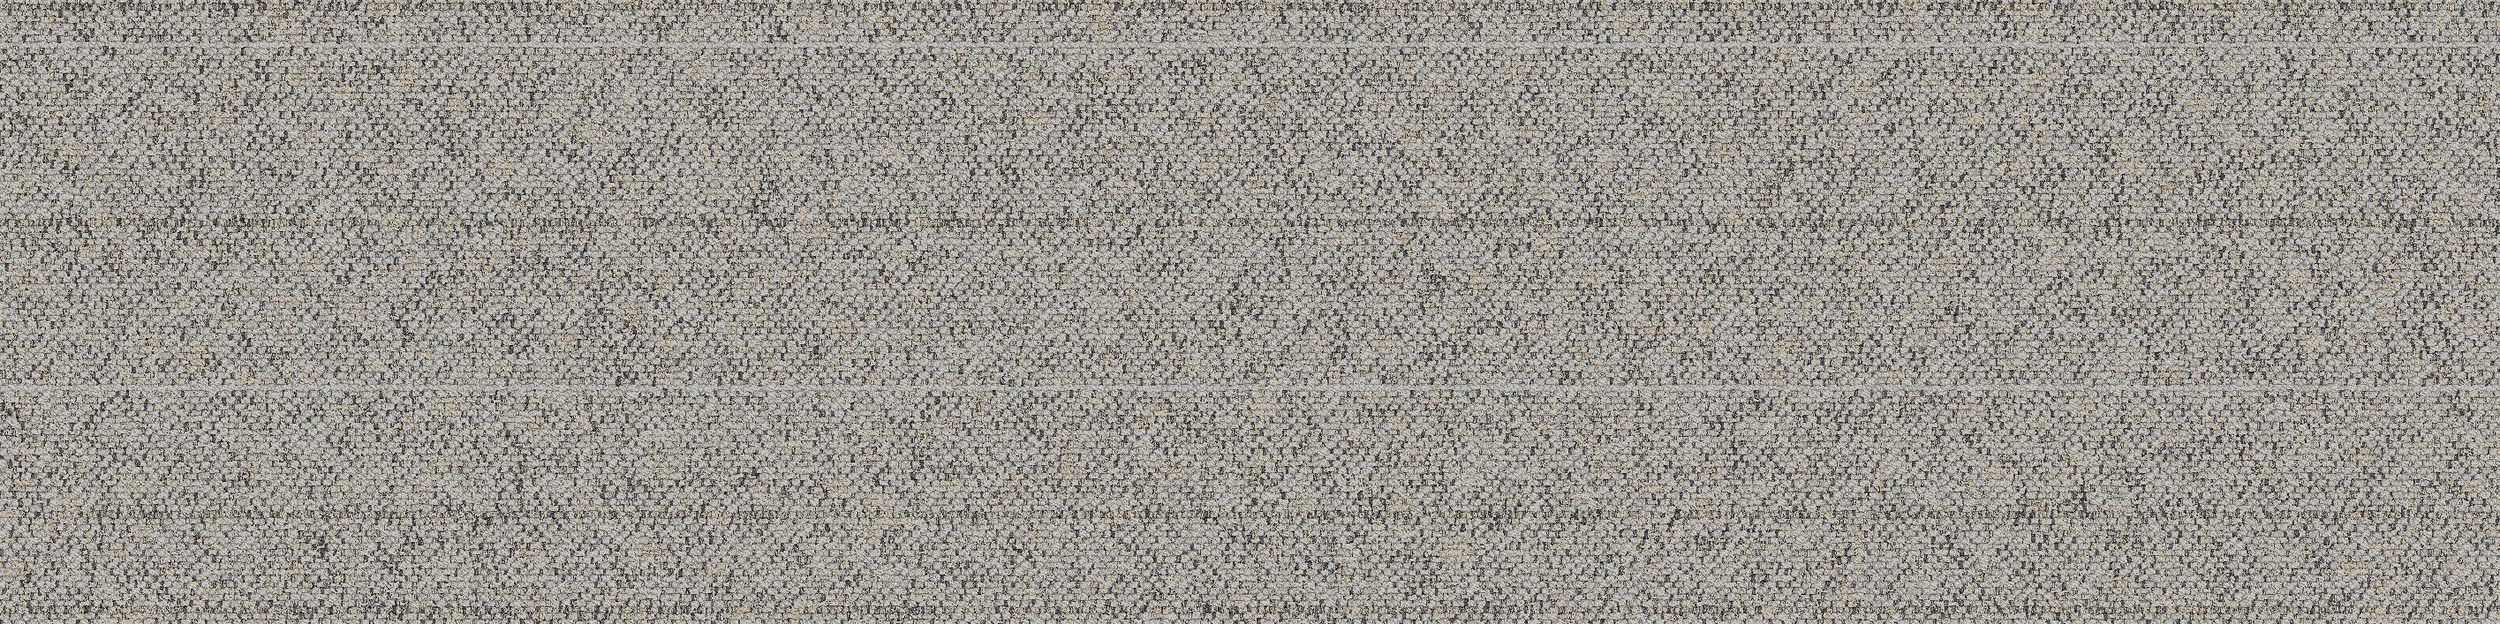 WW860 Carpet Tile In Linen Tweed número de imagen 2